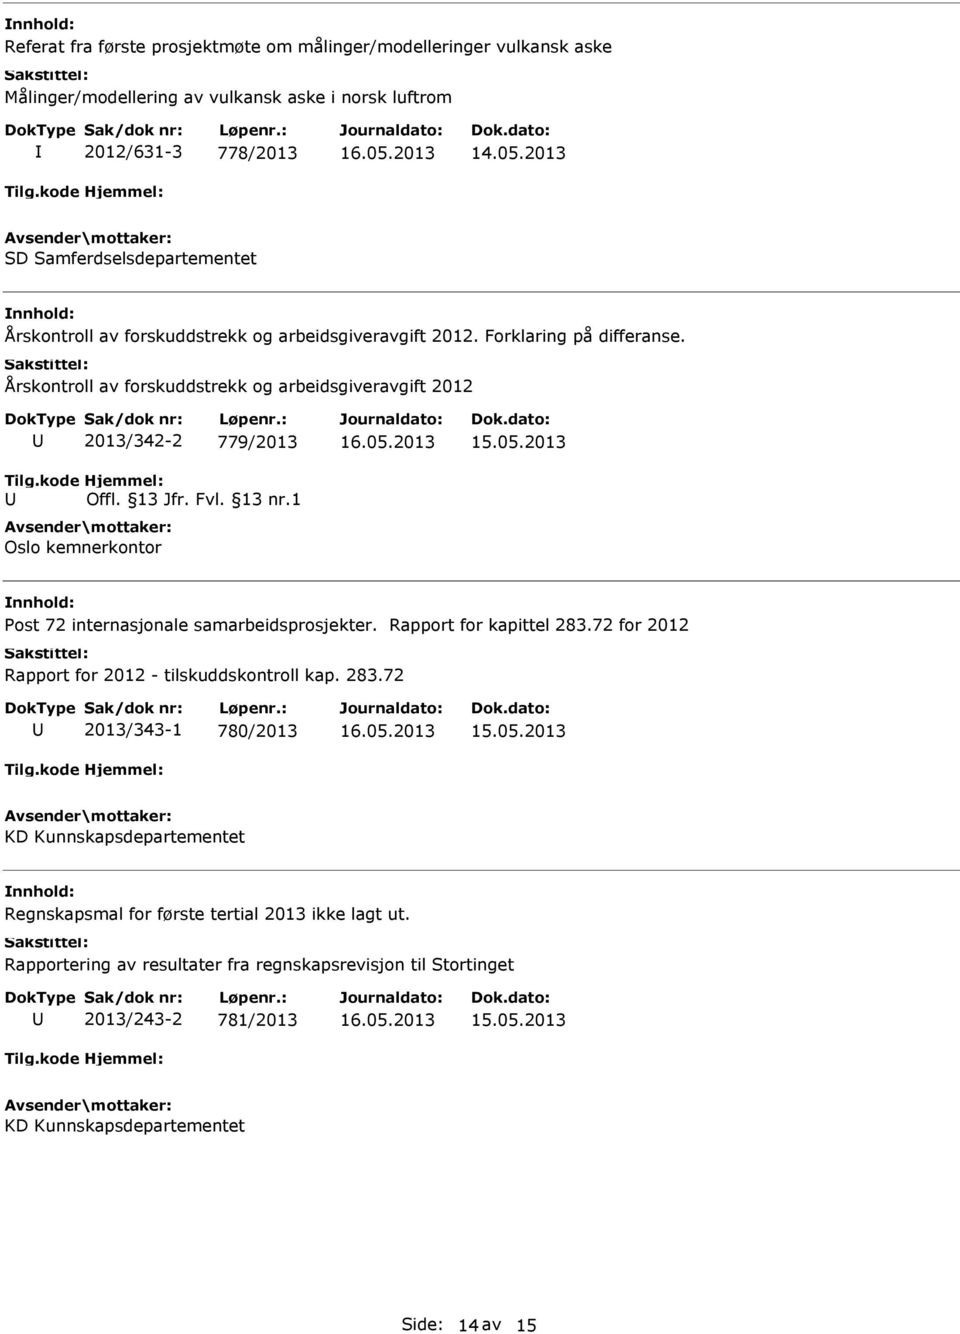 13 Jfr. Fvl. 13 nr.1 Oslo kemnerkontor 16.05.2013 15.05.2013 ost 72 internasjonale samarbeidsprosjekter. Rapport for kapittel 283.72 for 2012 Rapport for 2012 - tilskuddskontroll kap. 283.72 2013/343-1 780/2013 16.